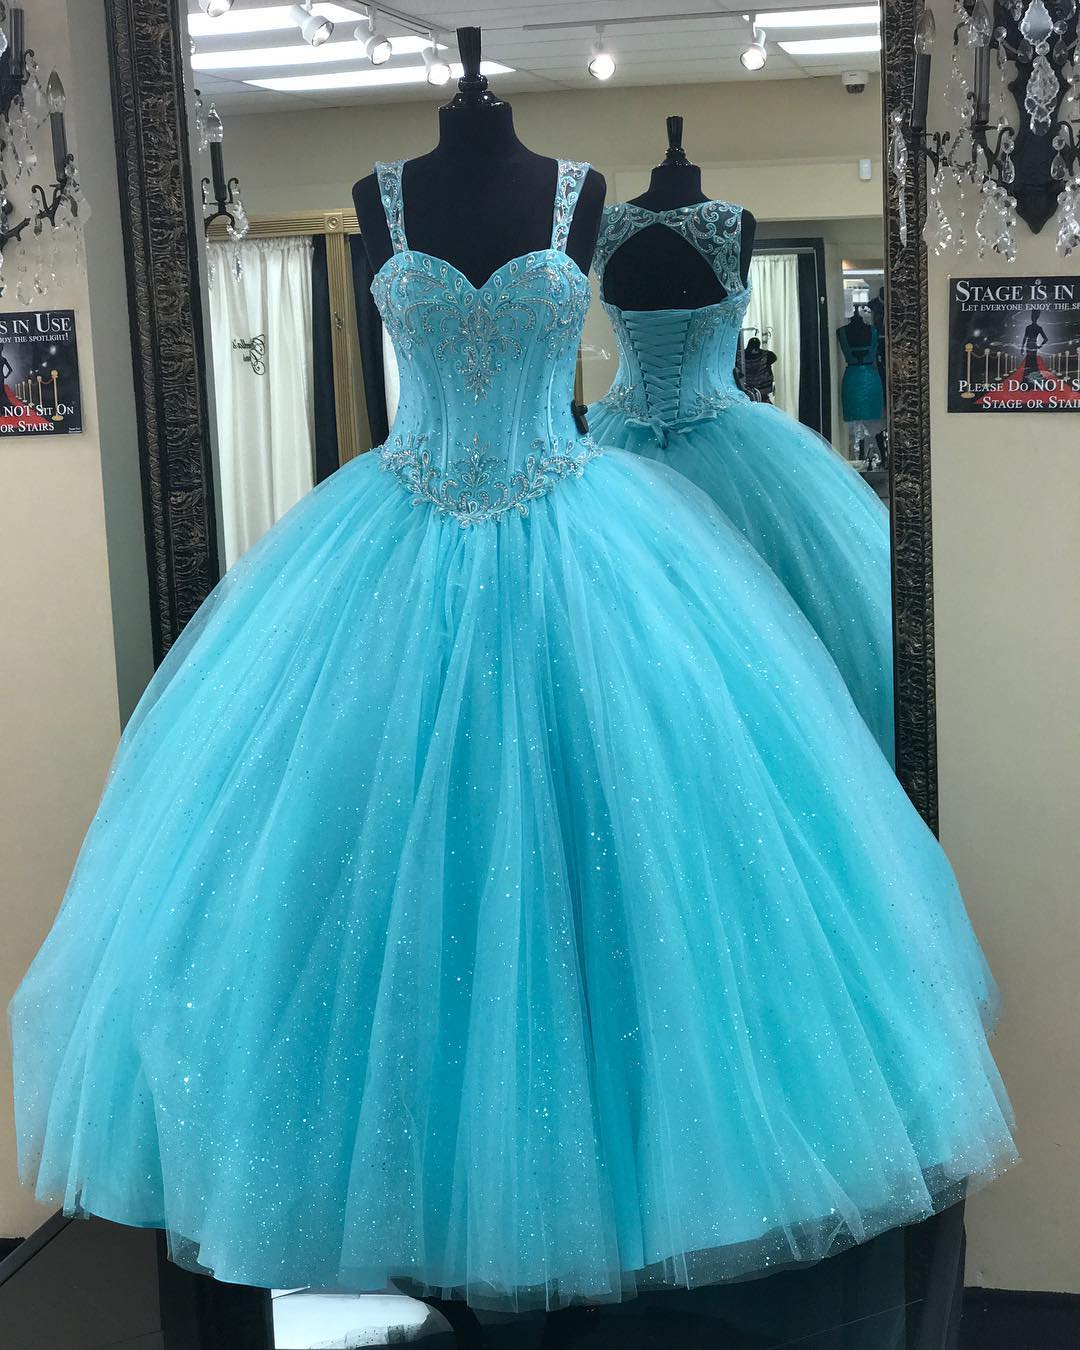 Blue Ball Gown Quinceanera Dress